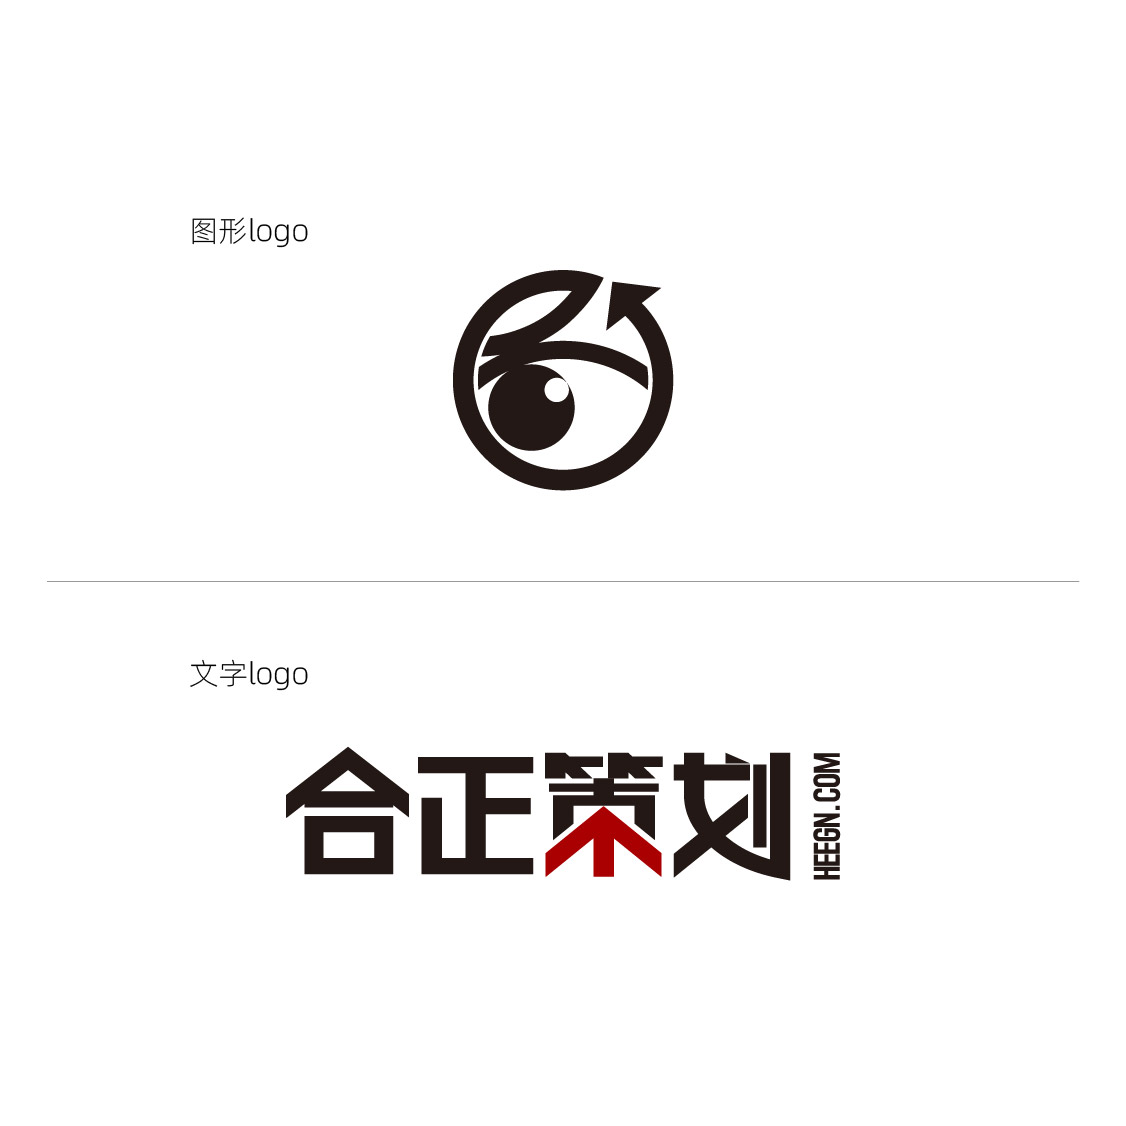 河南品牌营销策划公司,郑州企业品牌策划公司,郑州logo设计公司